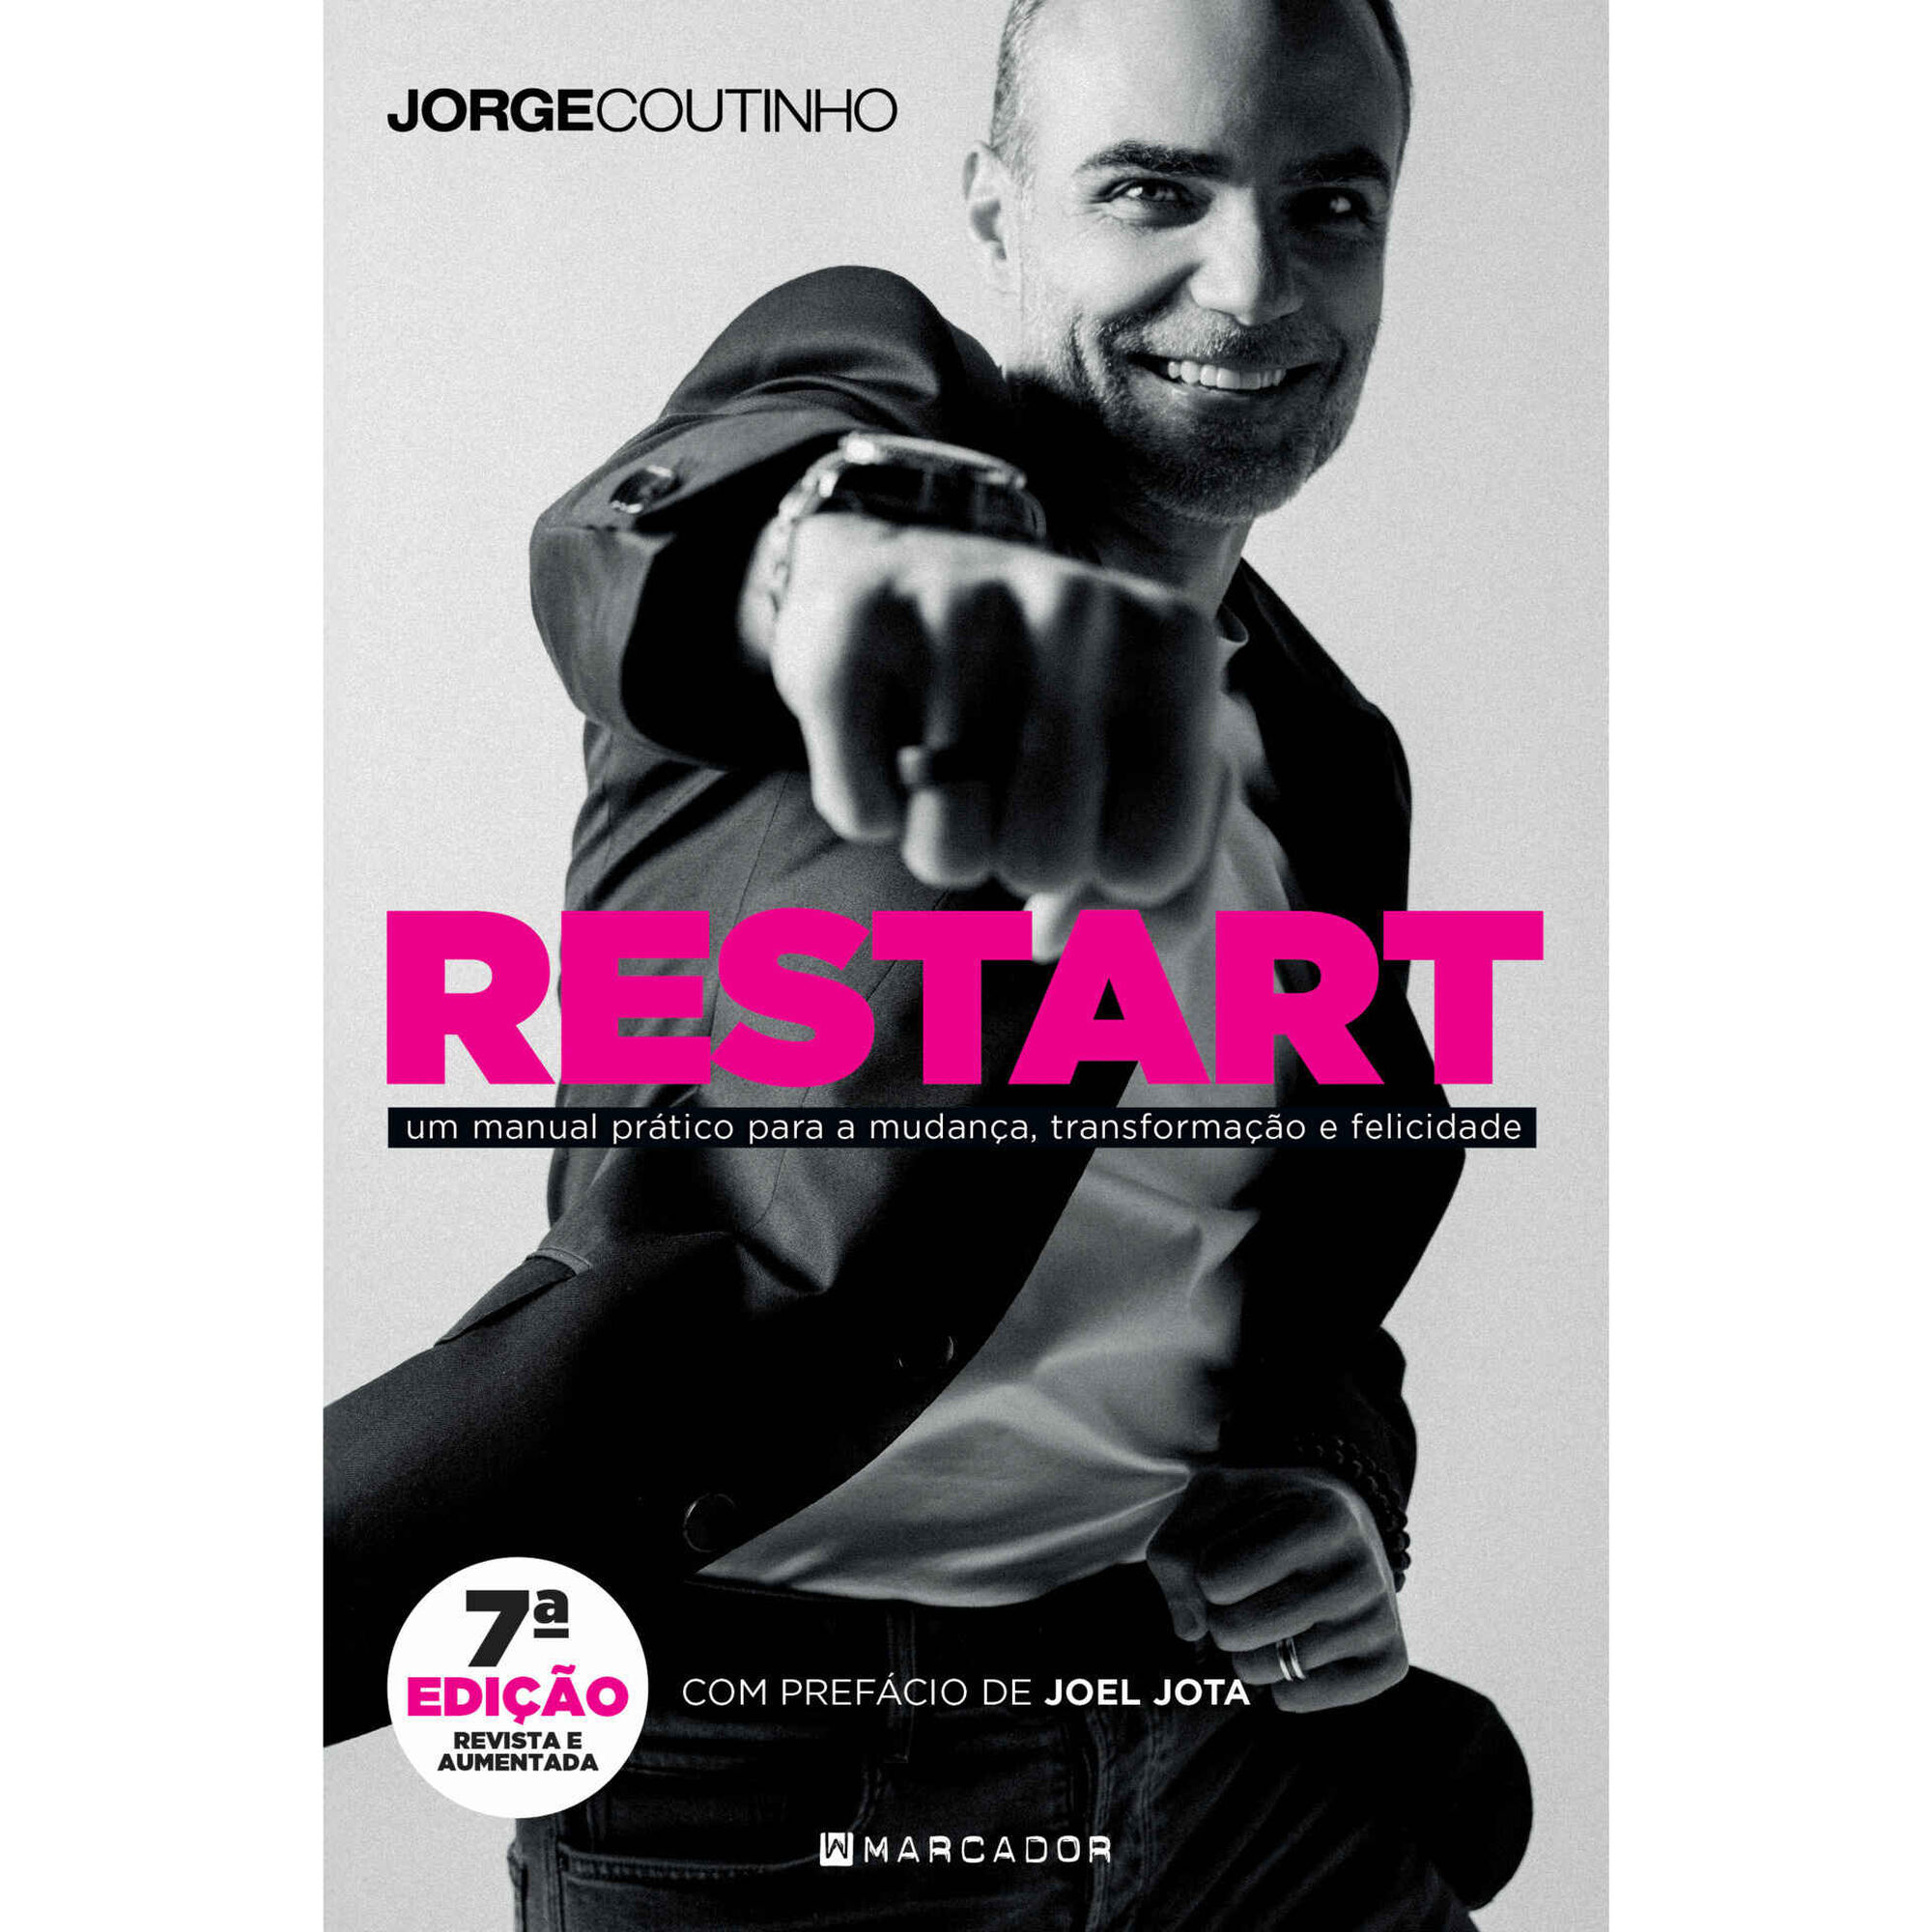 Restart (7ª Edição revista e aumentada)